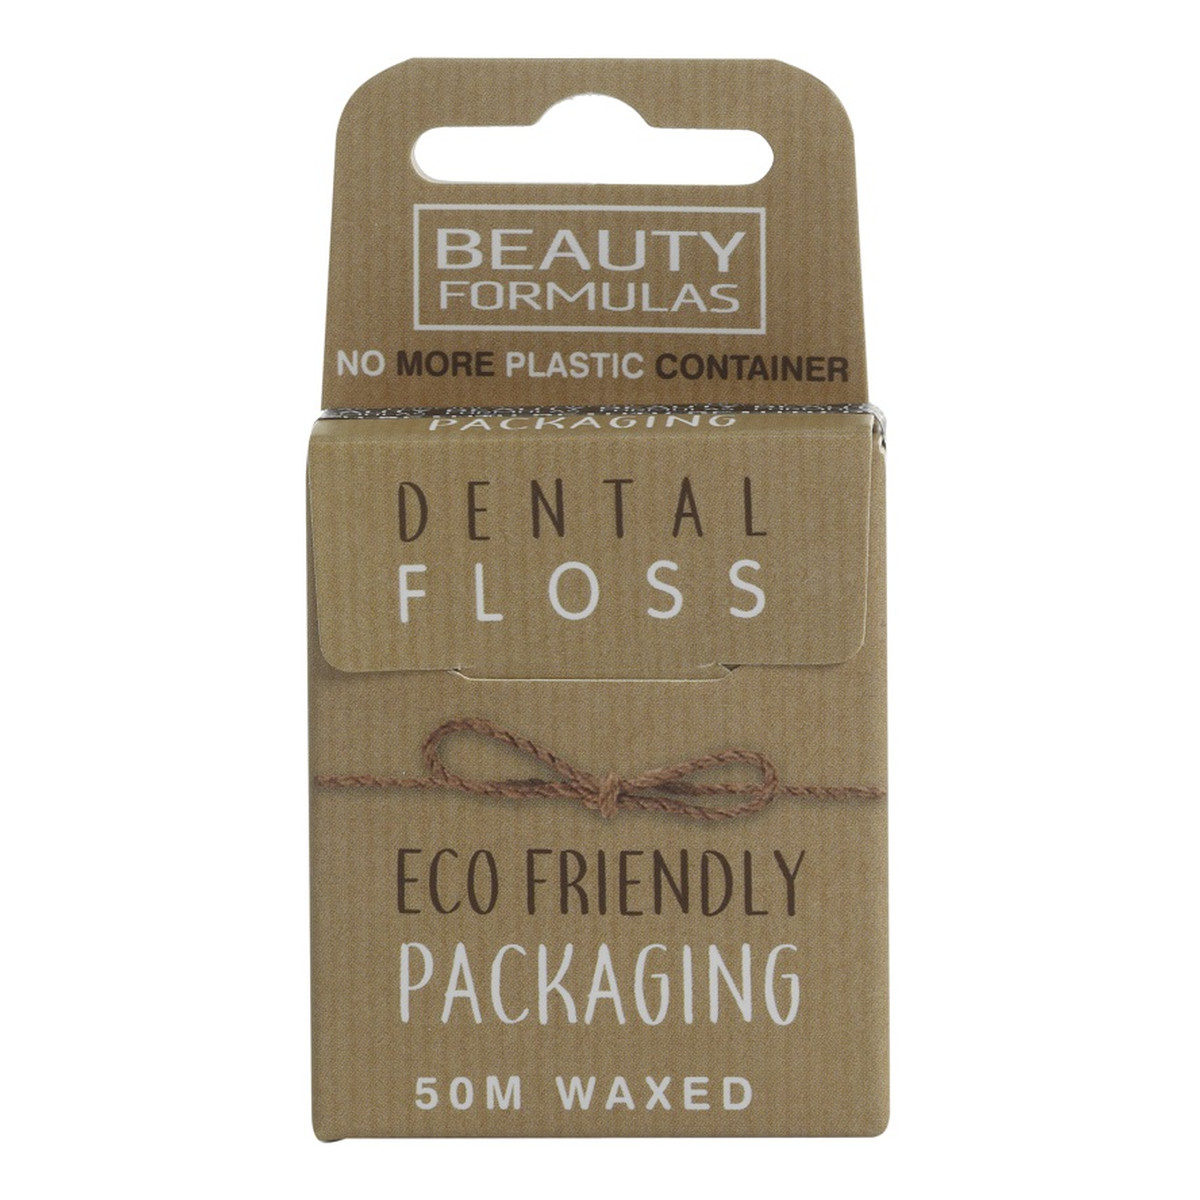 Beauty Formulas Eco friendly dental floss ekologiczna woskowana nić dentystyczna 50m